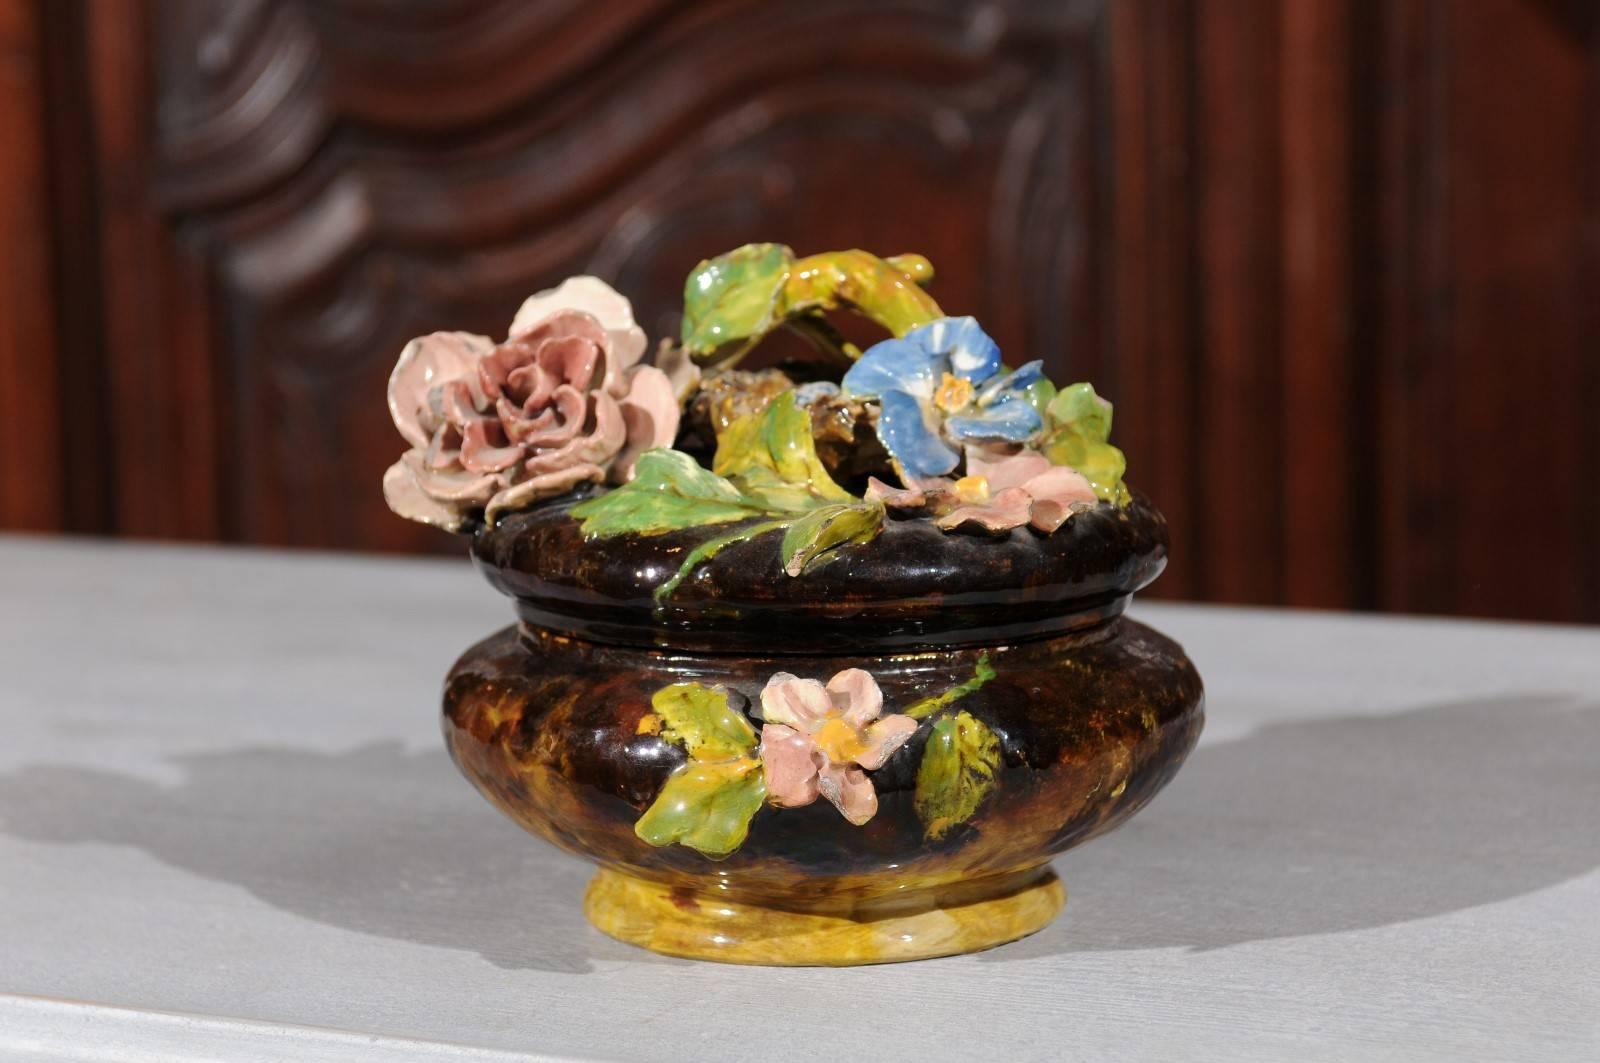 Kleine französische Fayence-Schale aus dem 19. Jahrhundert mit Blumen- und Vogelnestdekor aus Barbotine. Diese exquisite französische Keramik hat einen runden dunkelbraunen Scherben, der mit einem üppigen Blumendekor verziert ist, das typisch für